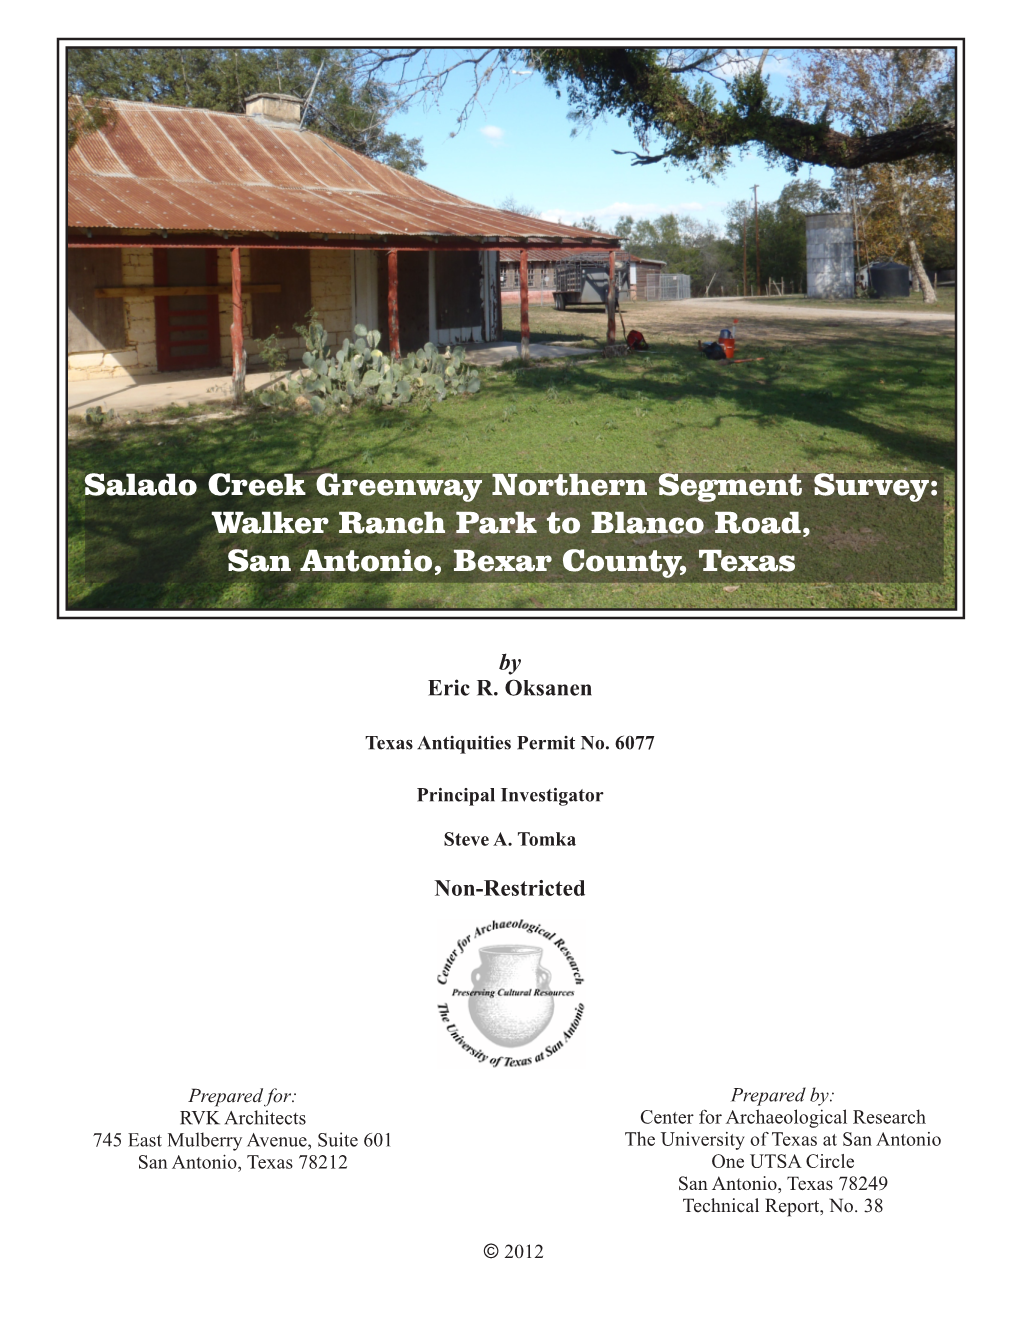 Salado Creek Greenway Northern Segment Survey: Walker Ranch Park to Blanco Road, San Antonio, Bexar County, Texas